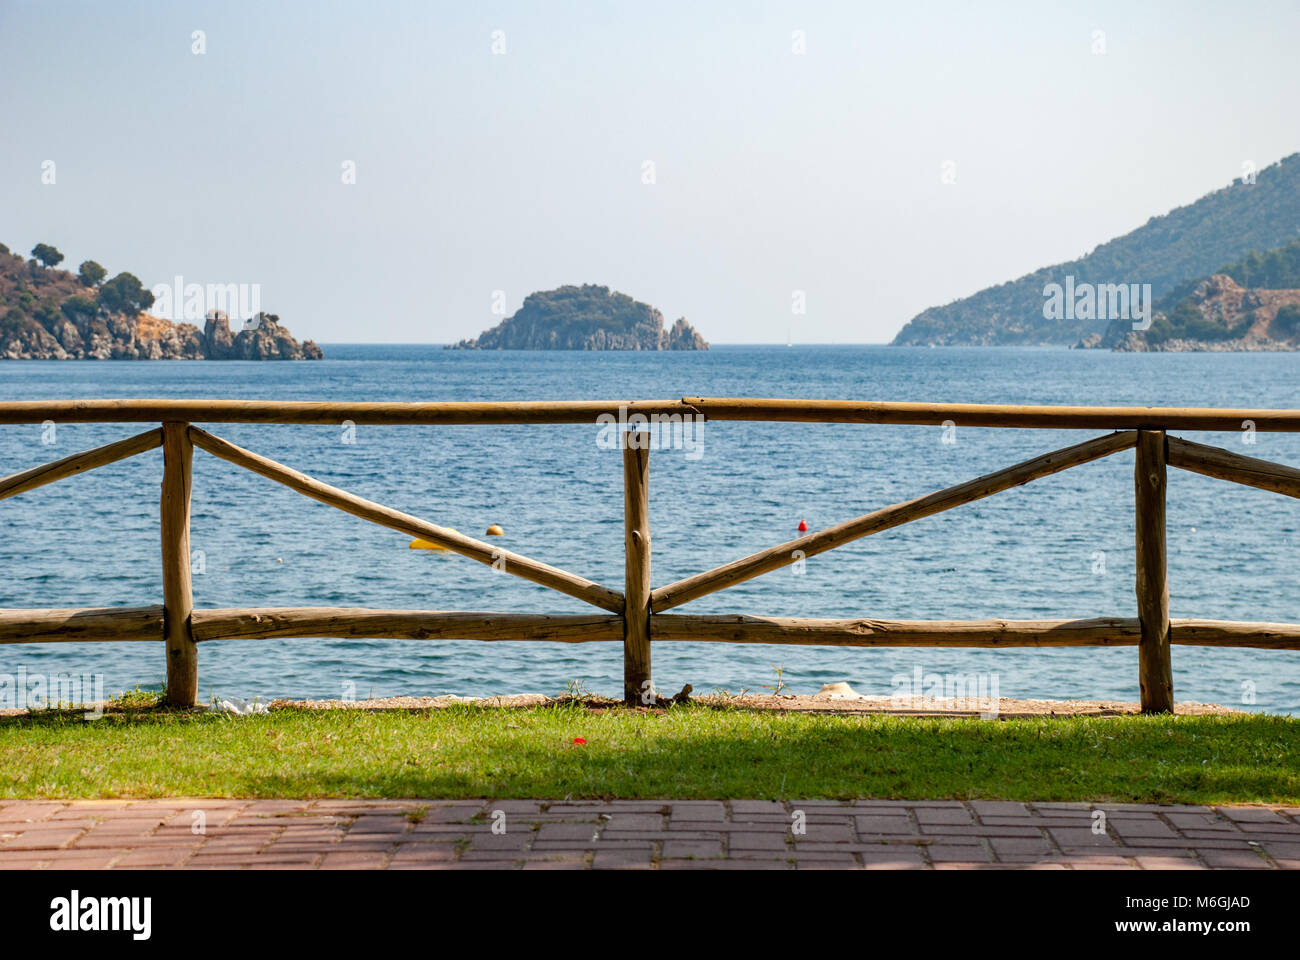 La pittoresca recinzione in legno è allineata a un tranquillo sentiero a piedi sulla riva del mare, che offre vedute panoramiche Foto Stock